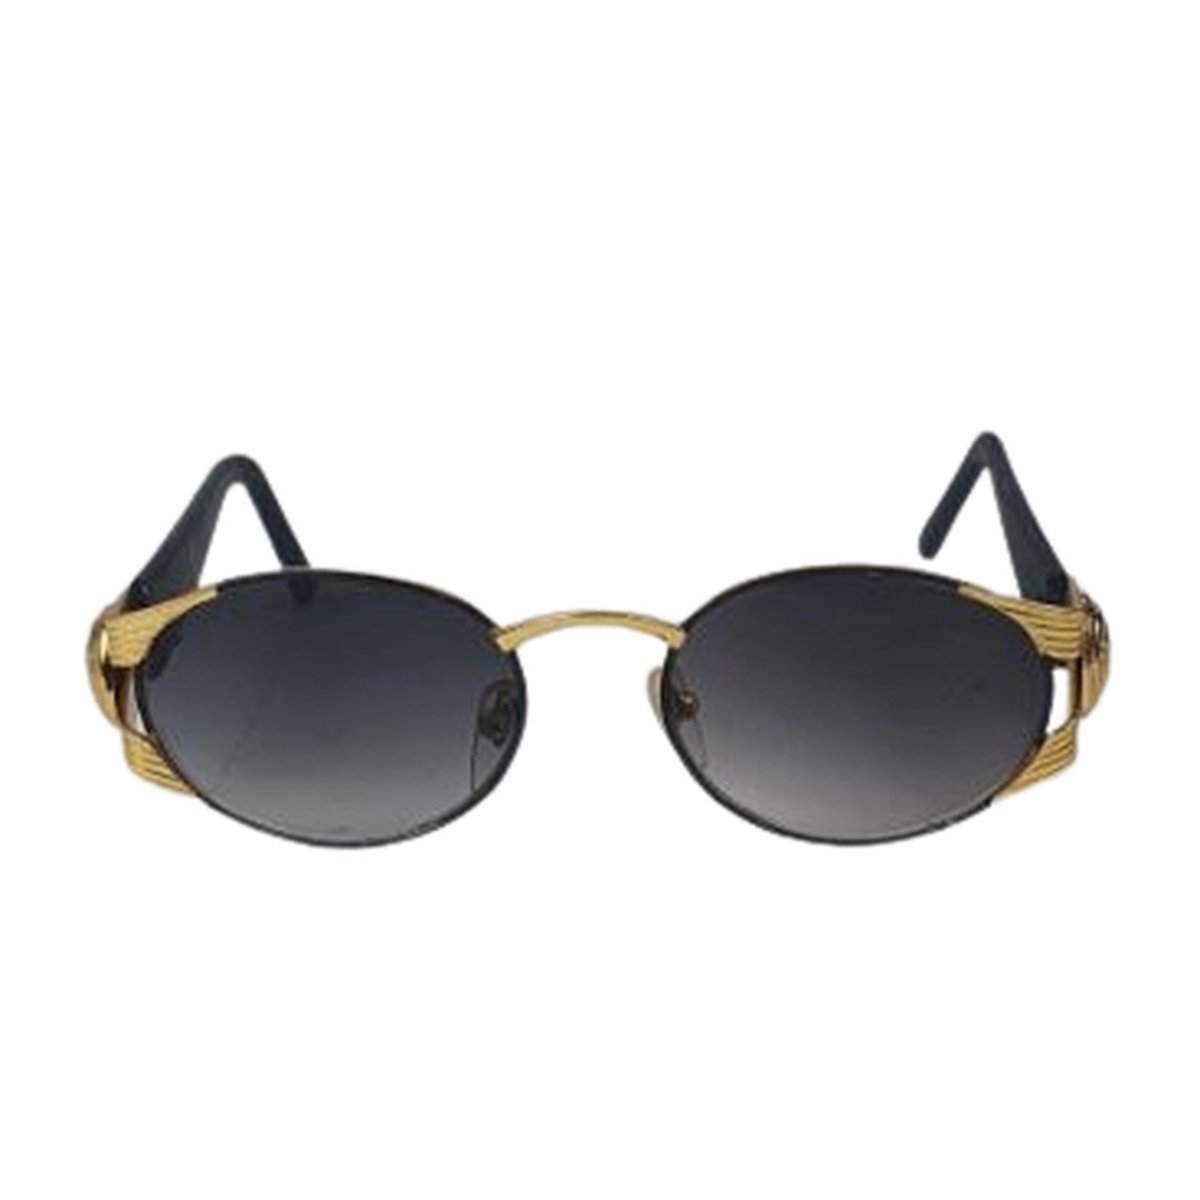 Zonnebril LIZZY - UV 400 - Goud / Zwart - Trendy bril met gouden look - Normaal Model - Shades - Unisex